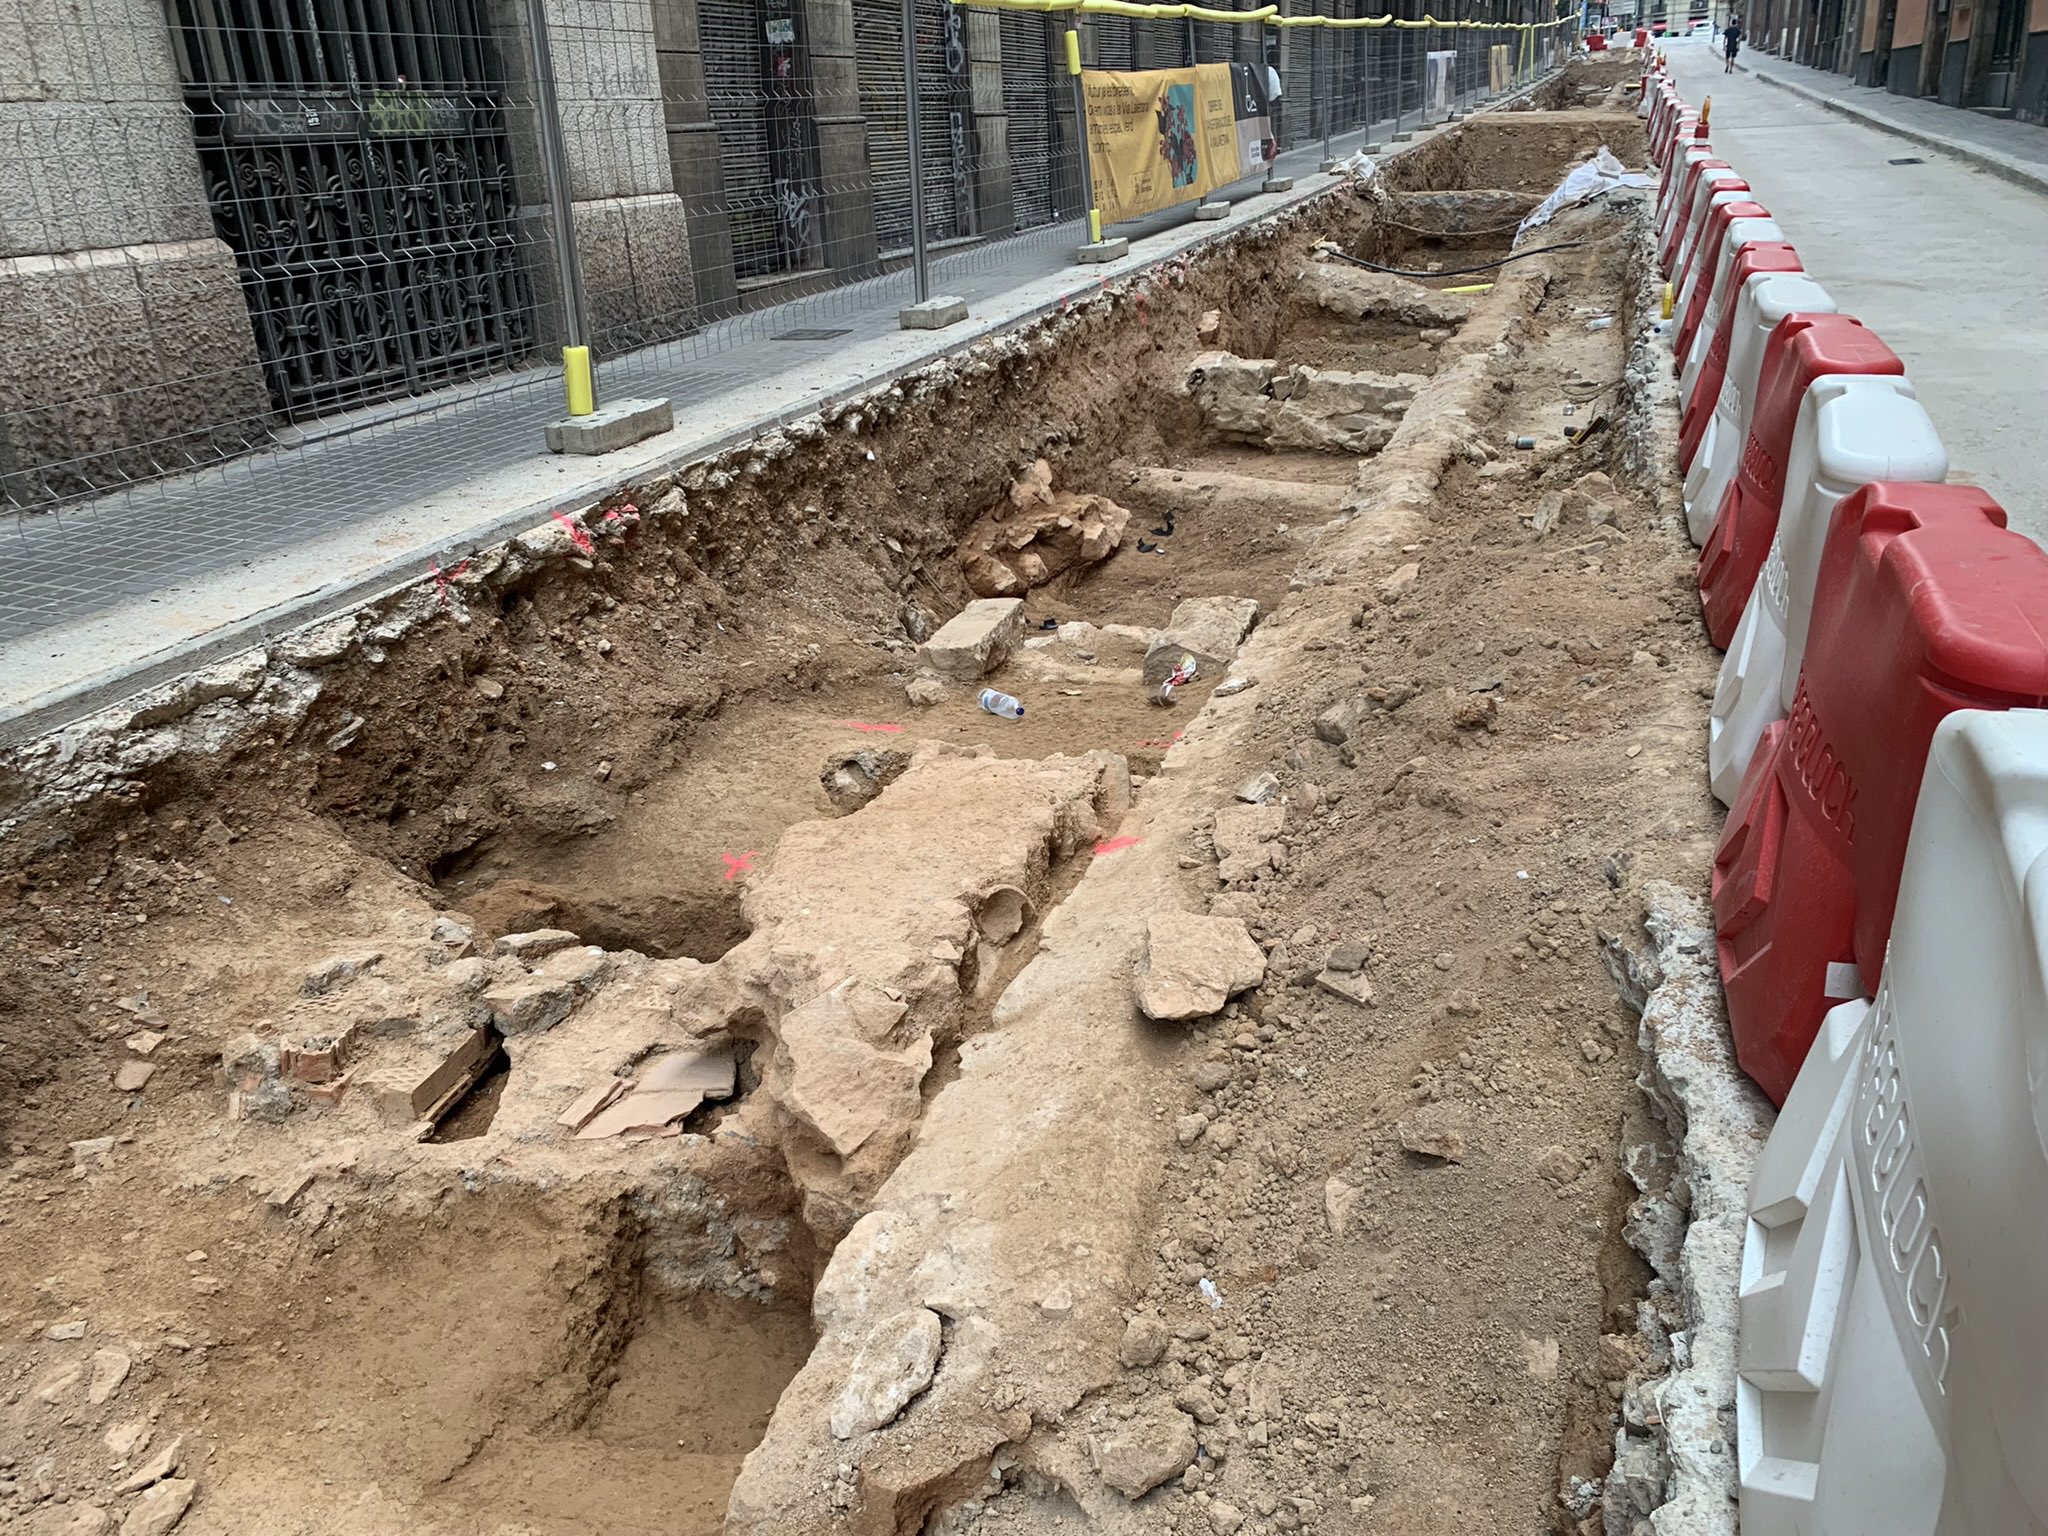 Afloren noves restes arqueològiques al centre de Barcelona, ara al carrer Jonqueres